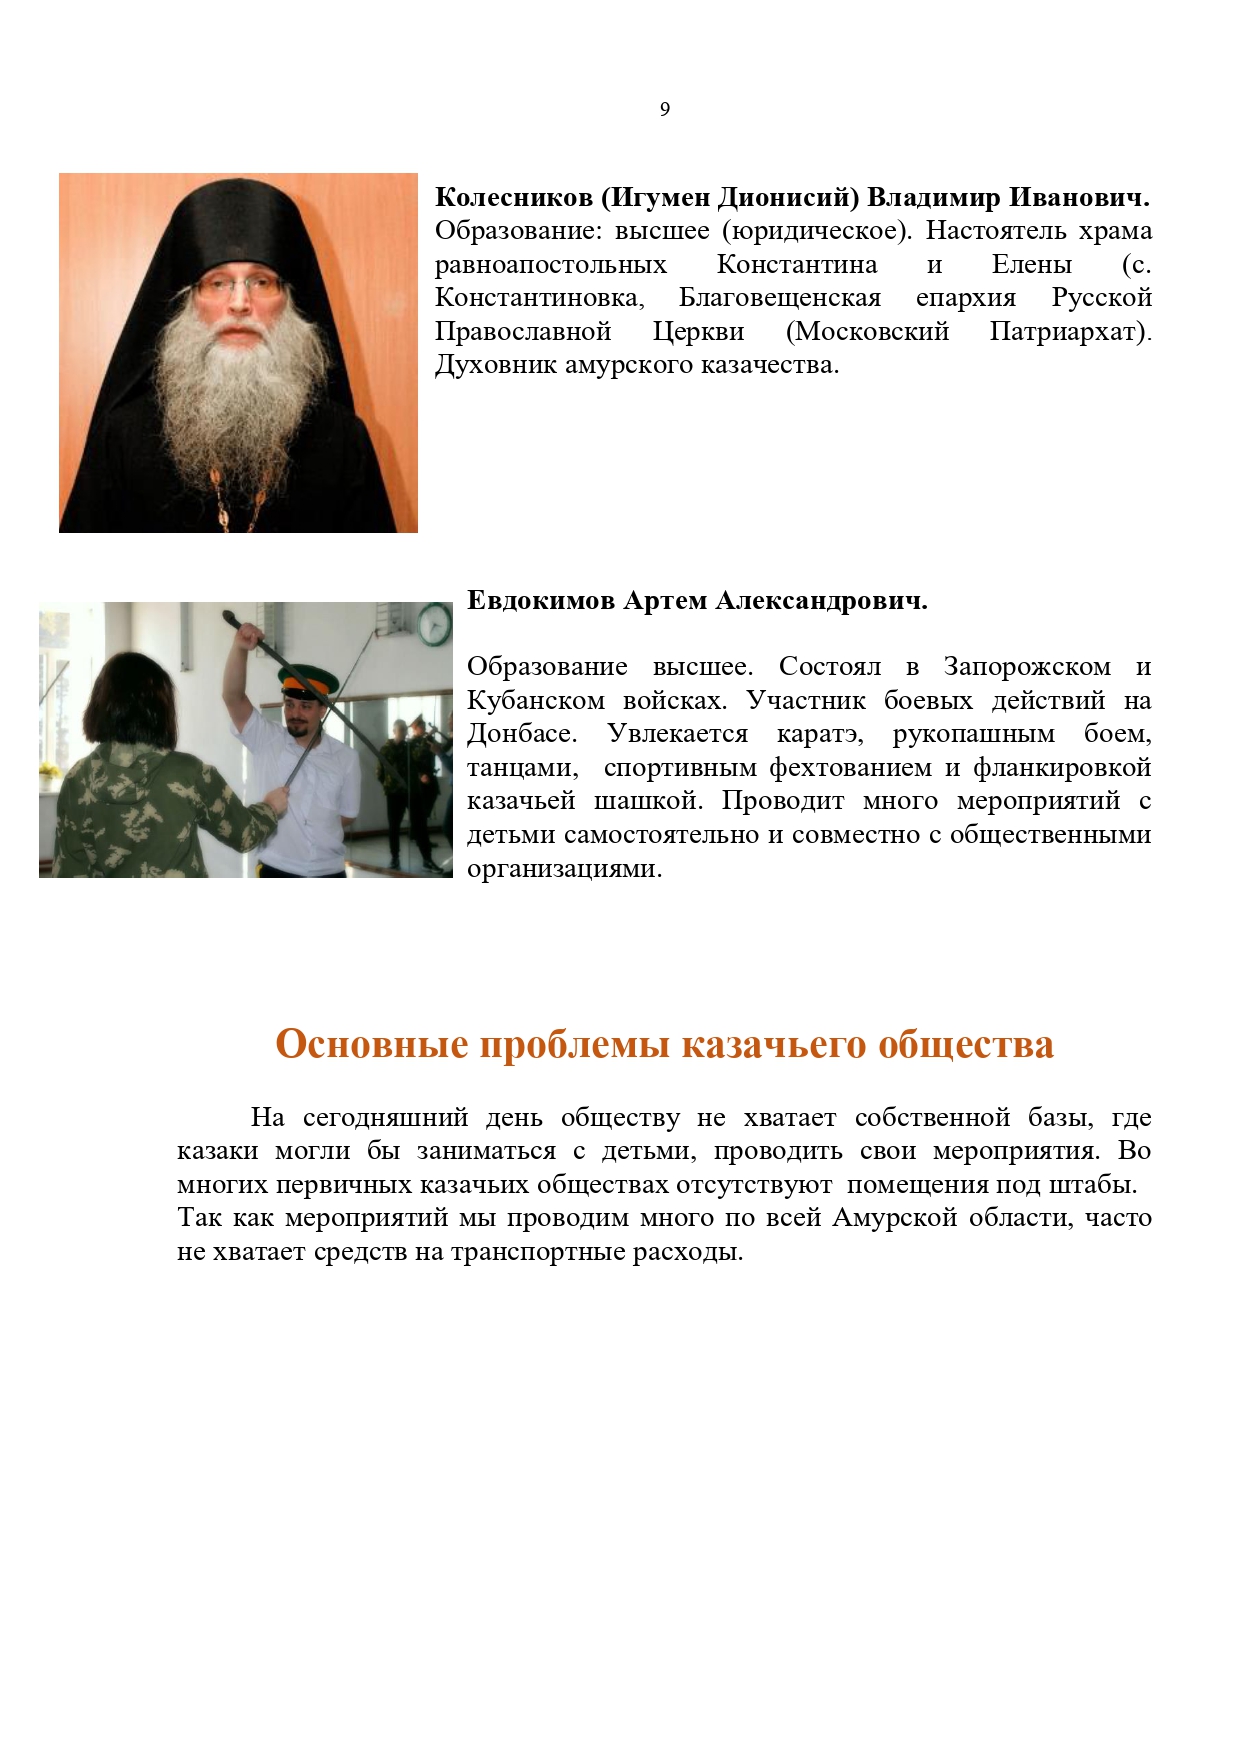 Публичный годовой отчет Амурского окружного казачьего общества за 2019 год Page 0009